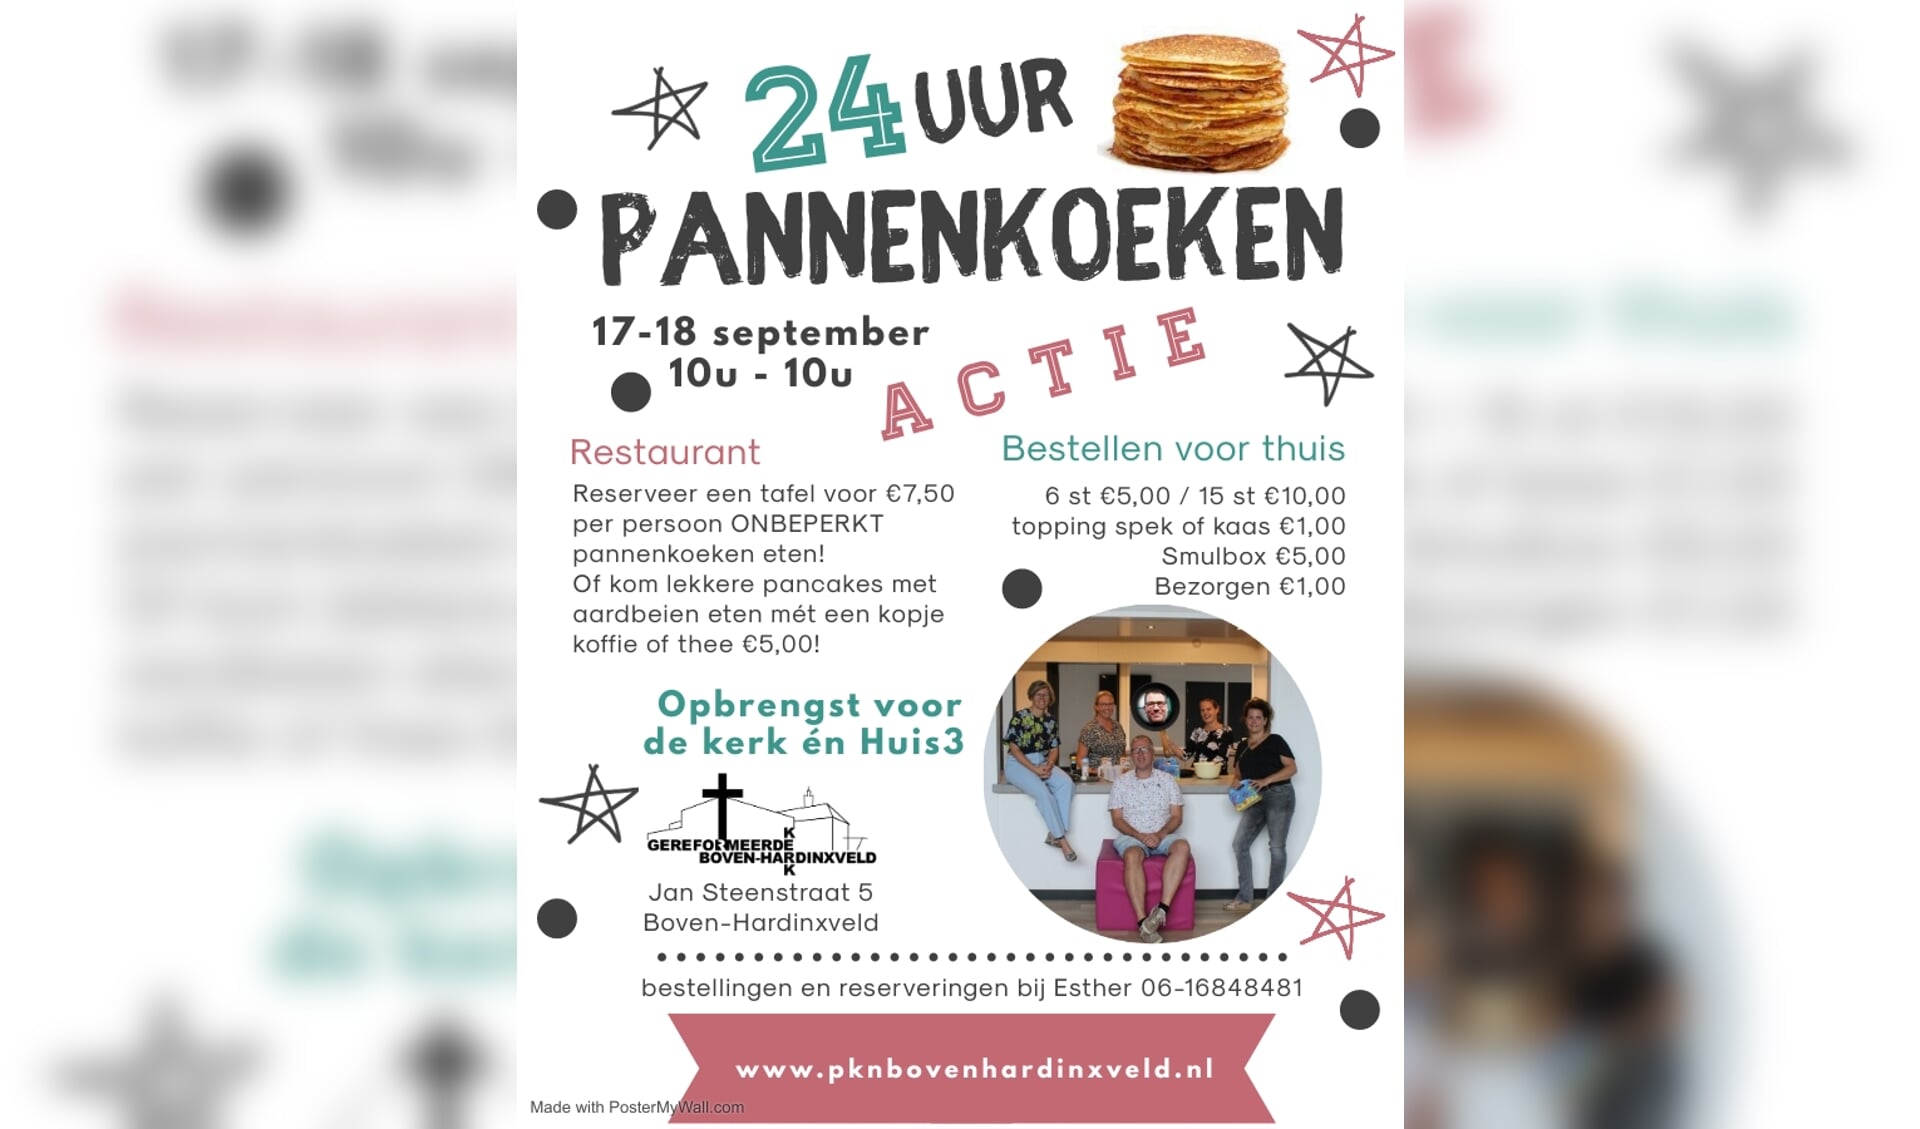 24 uur pannenkoeken bakken voor PKN en HUIS 3 Kompas Hardinxveld-Giessendam | Nieuws uit de regio